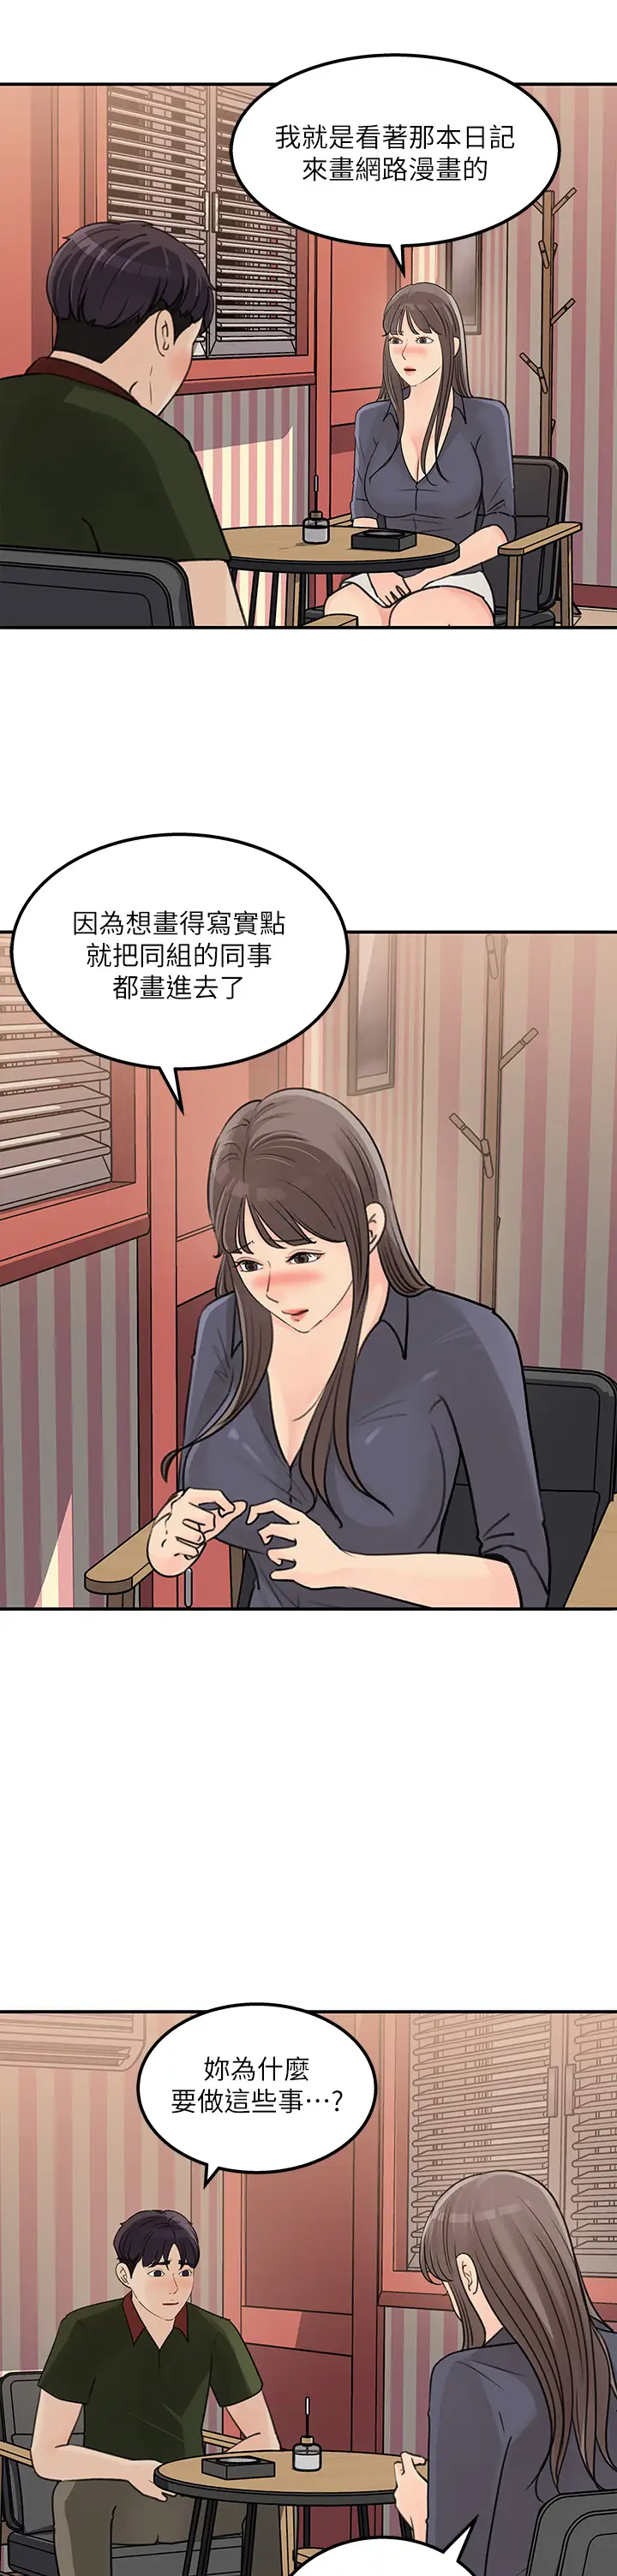 韩国污漫画 女神收藏清單 最终话梦想中的火热爱情 13